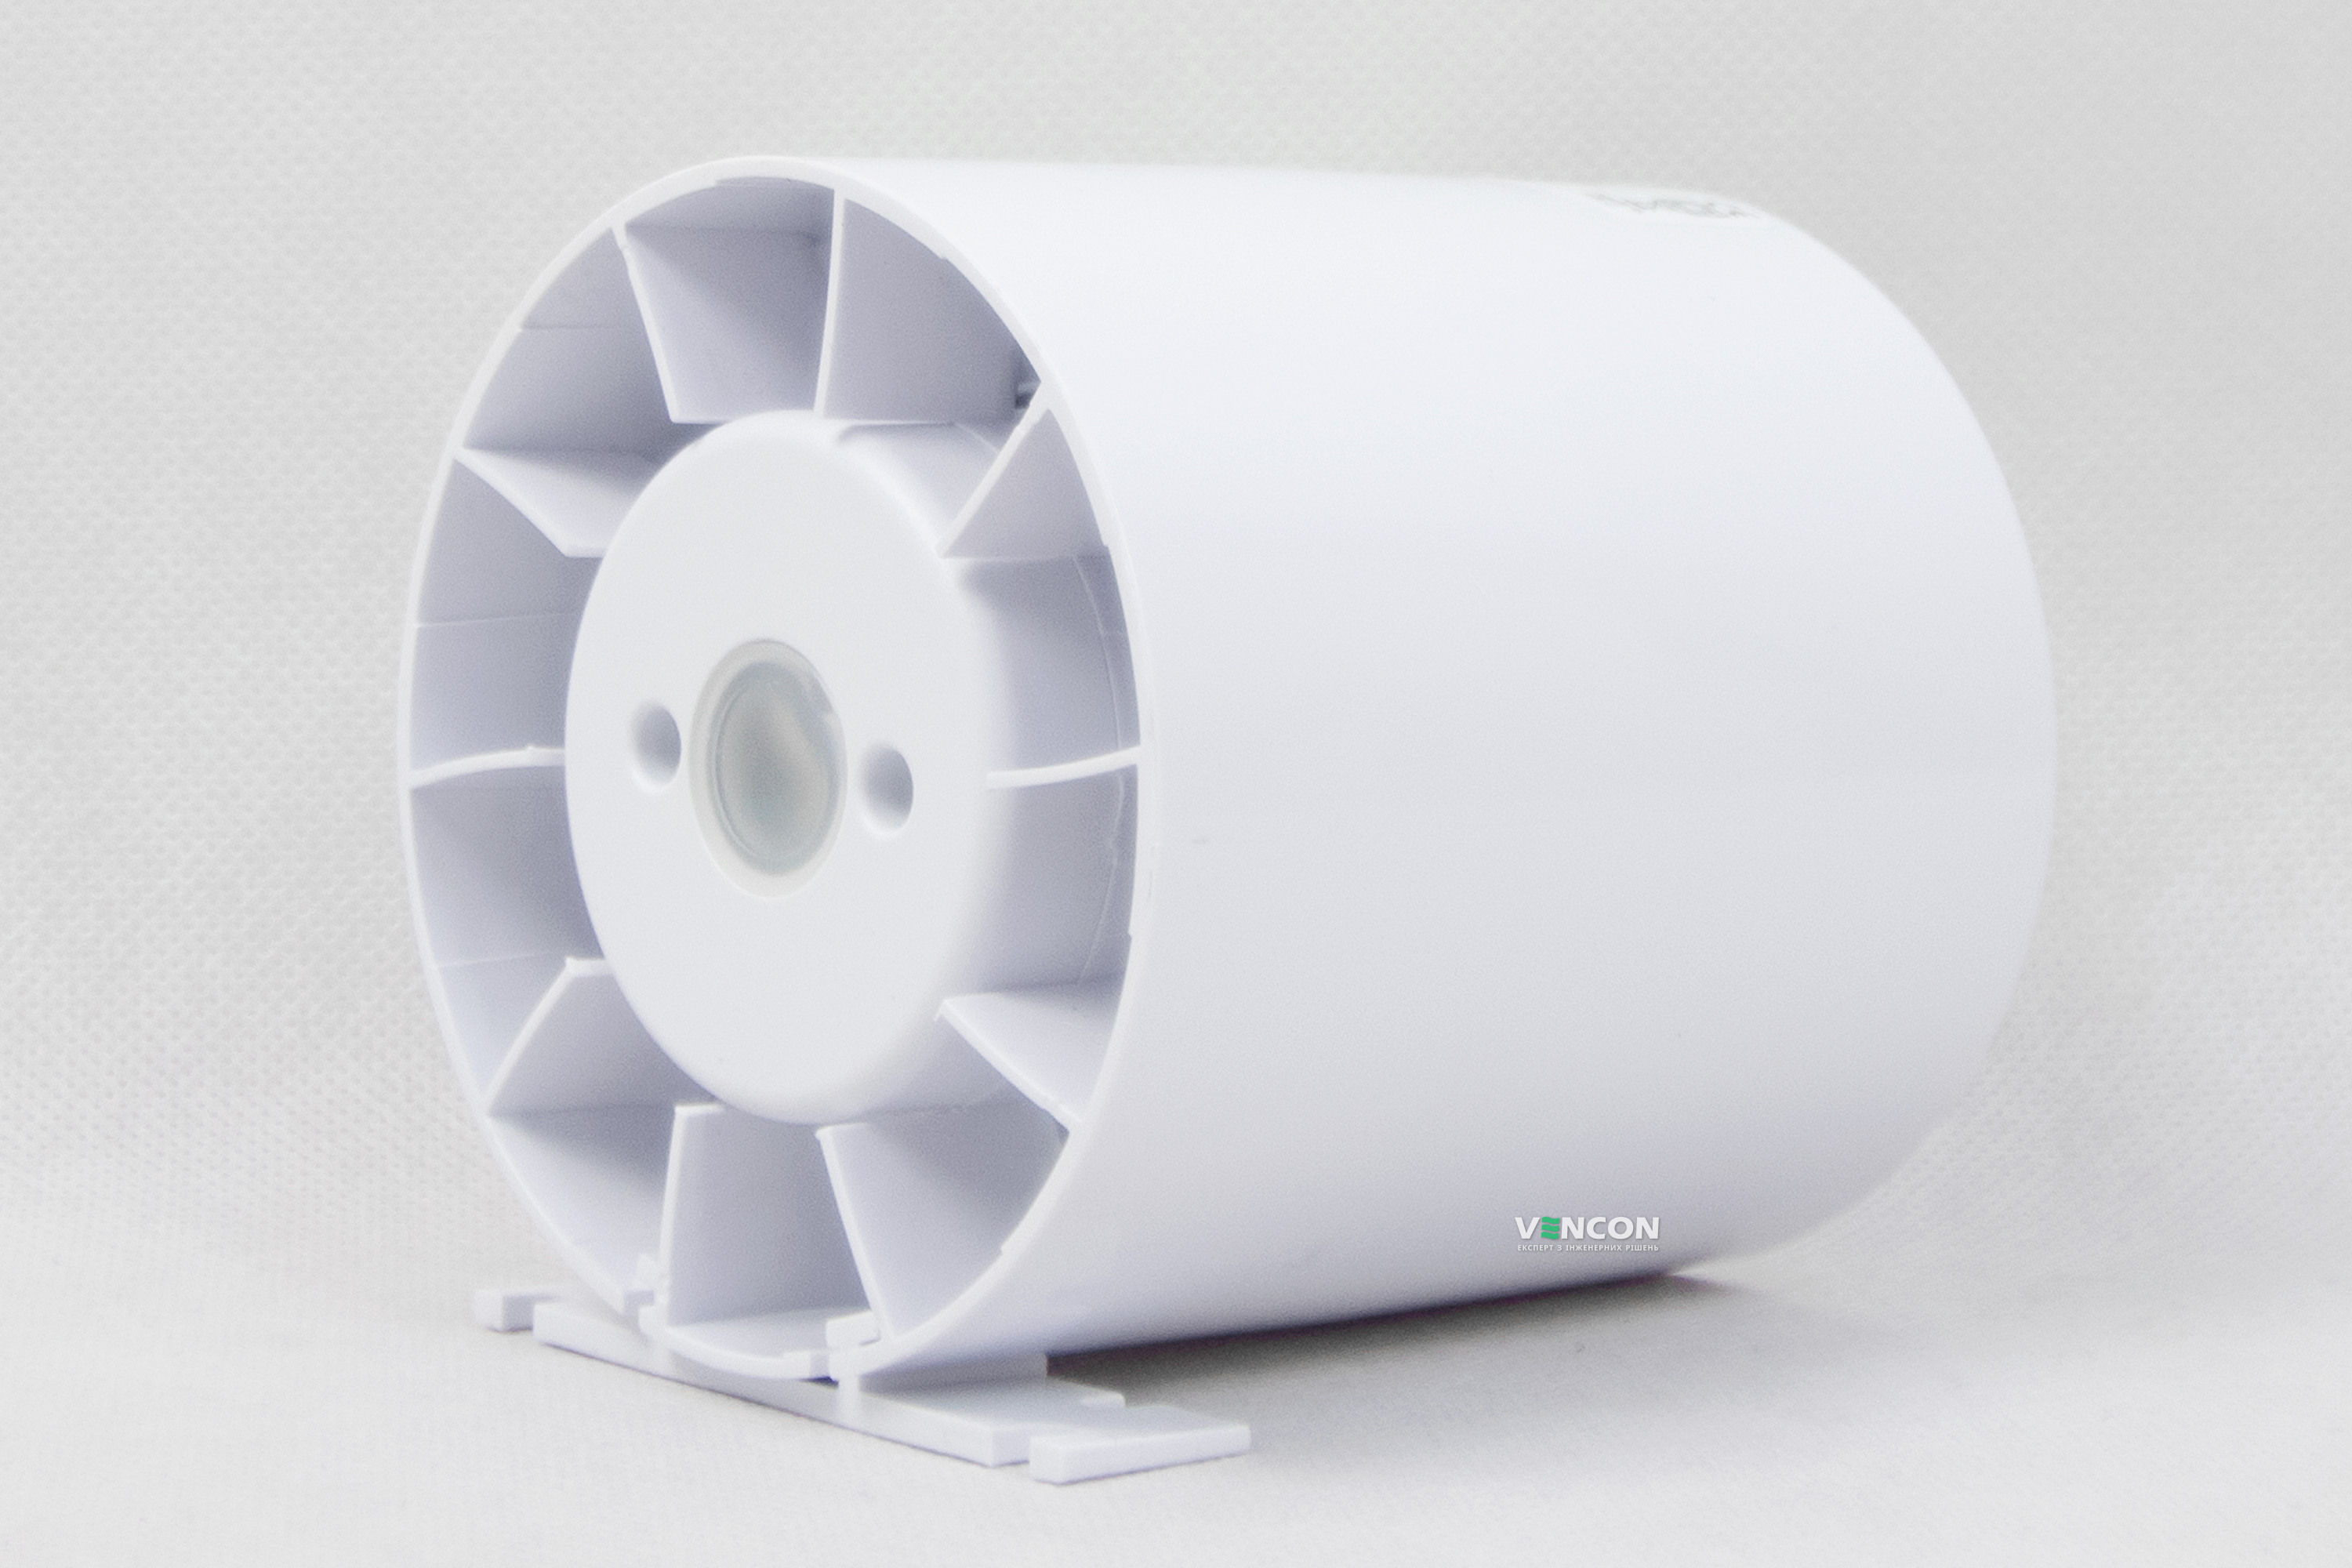 Канальный вентилятор AirRoxy aRc 100 S (01-049) отзывы - изображения 5